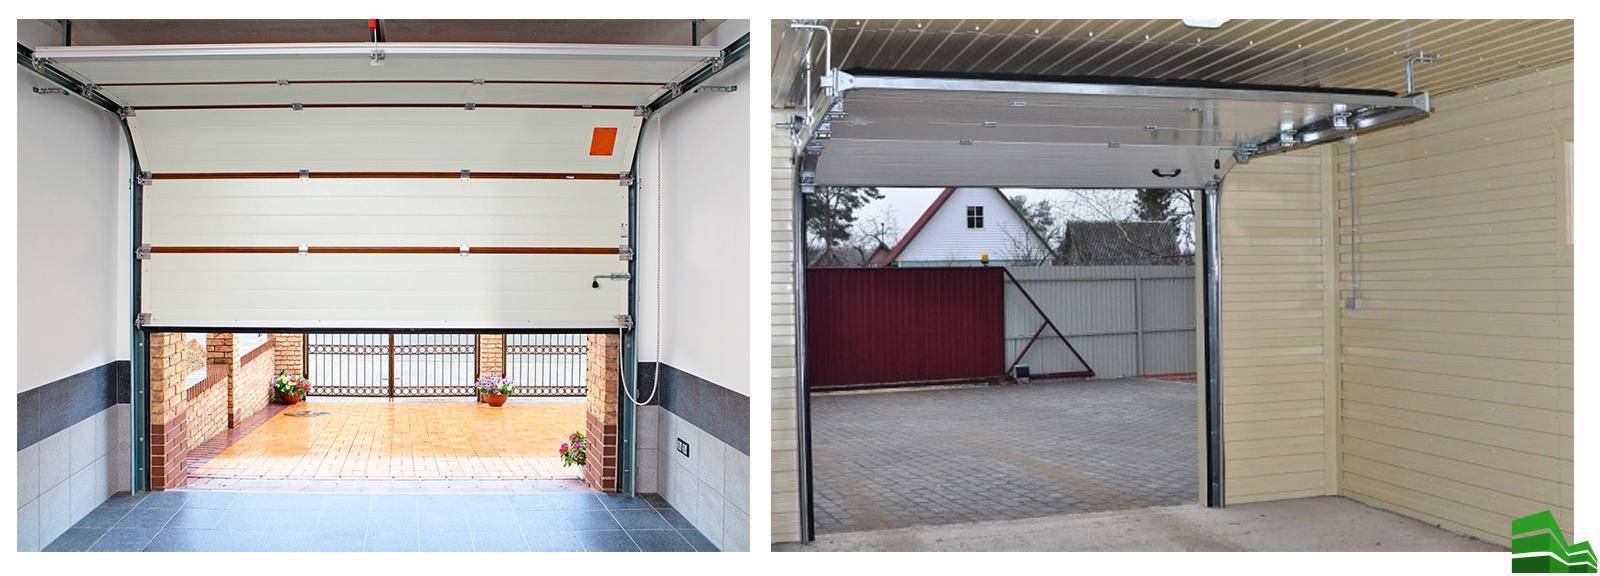 Какие гаражные ворота лучше выбрать: секционные или рулонные?  - альфадом